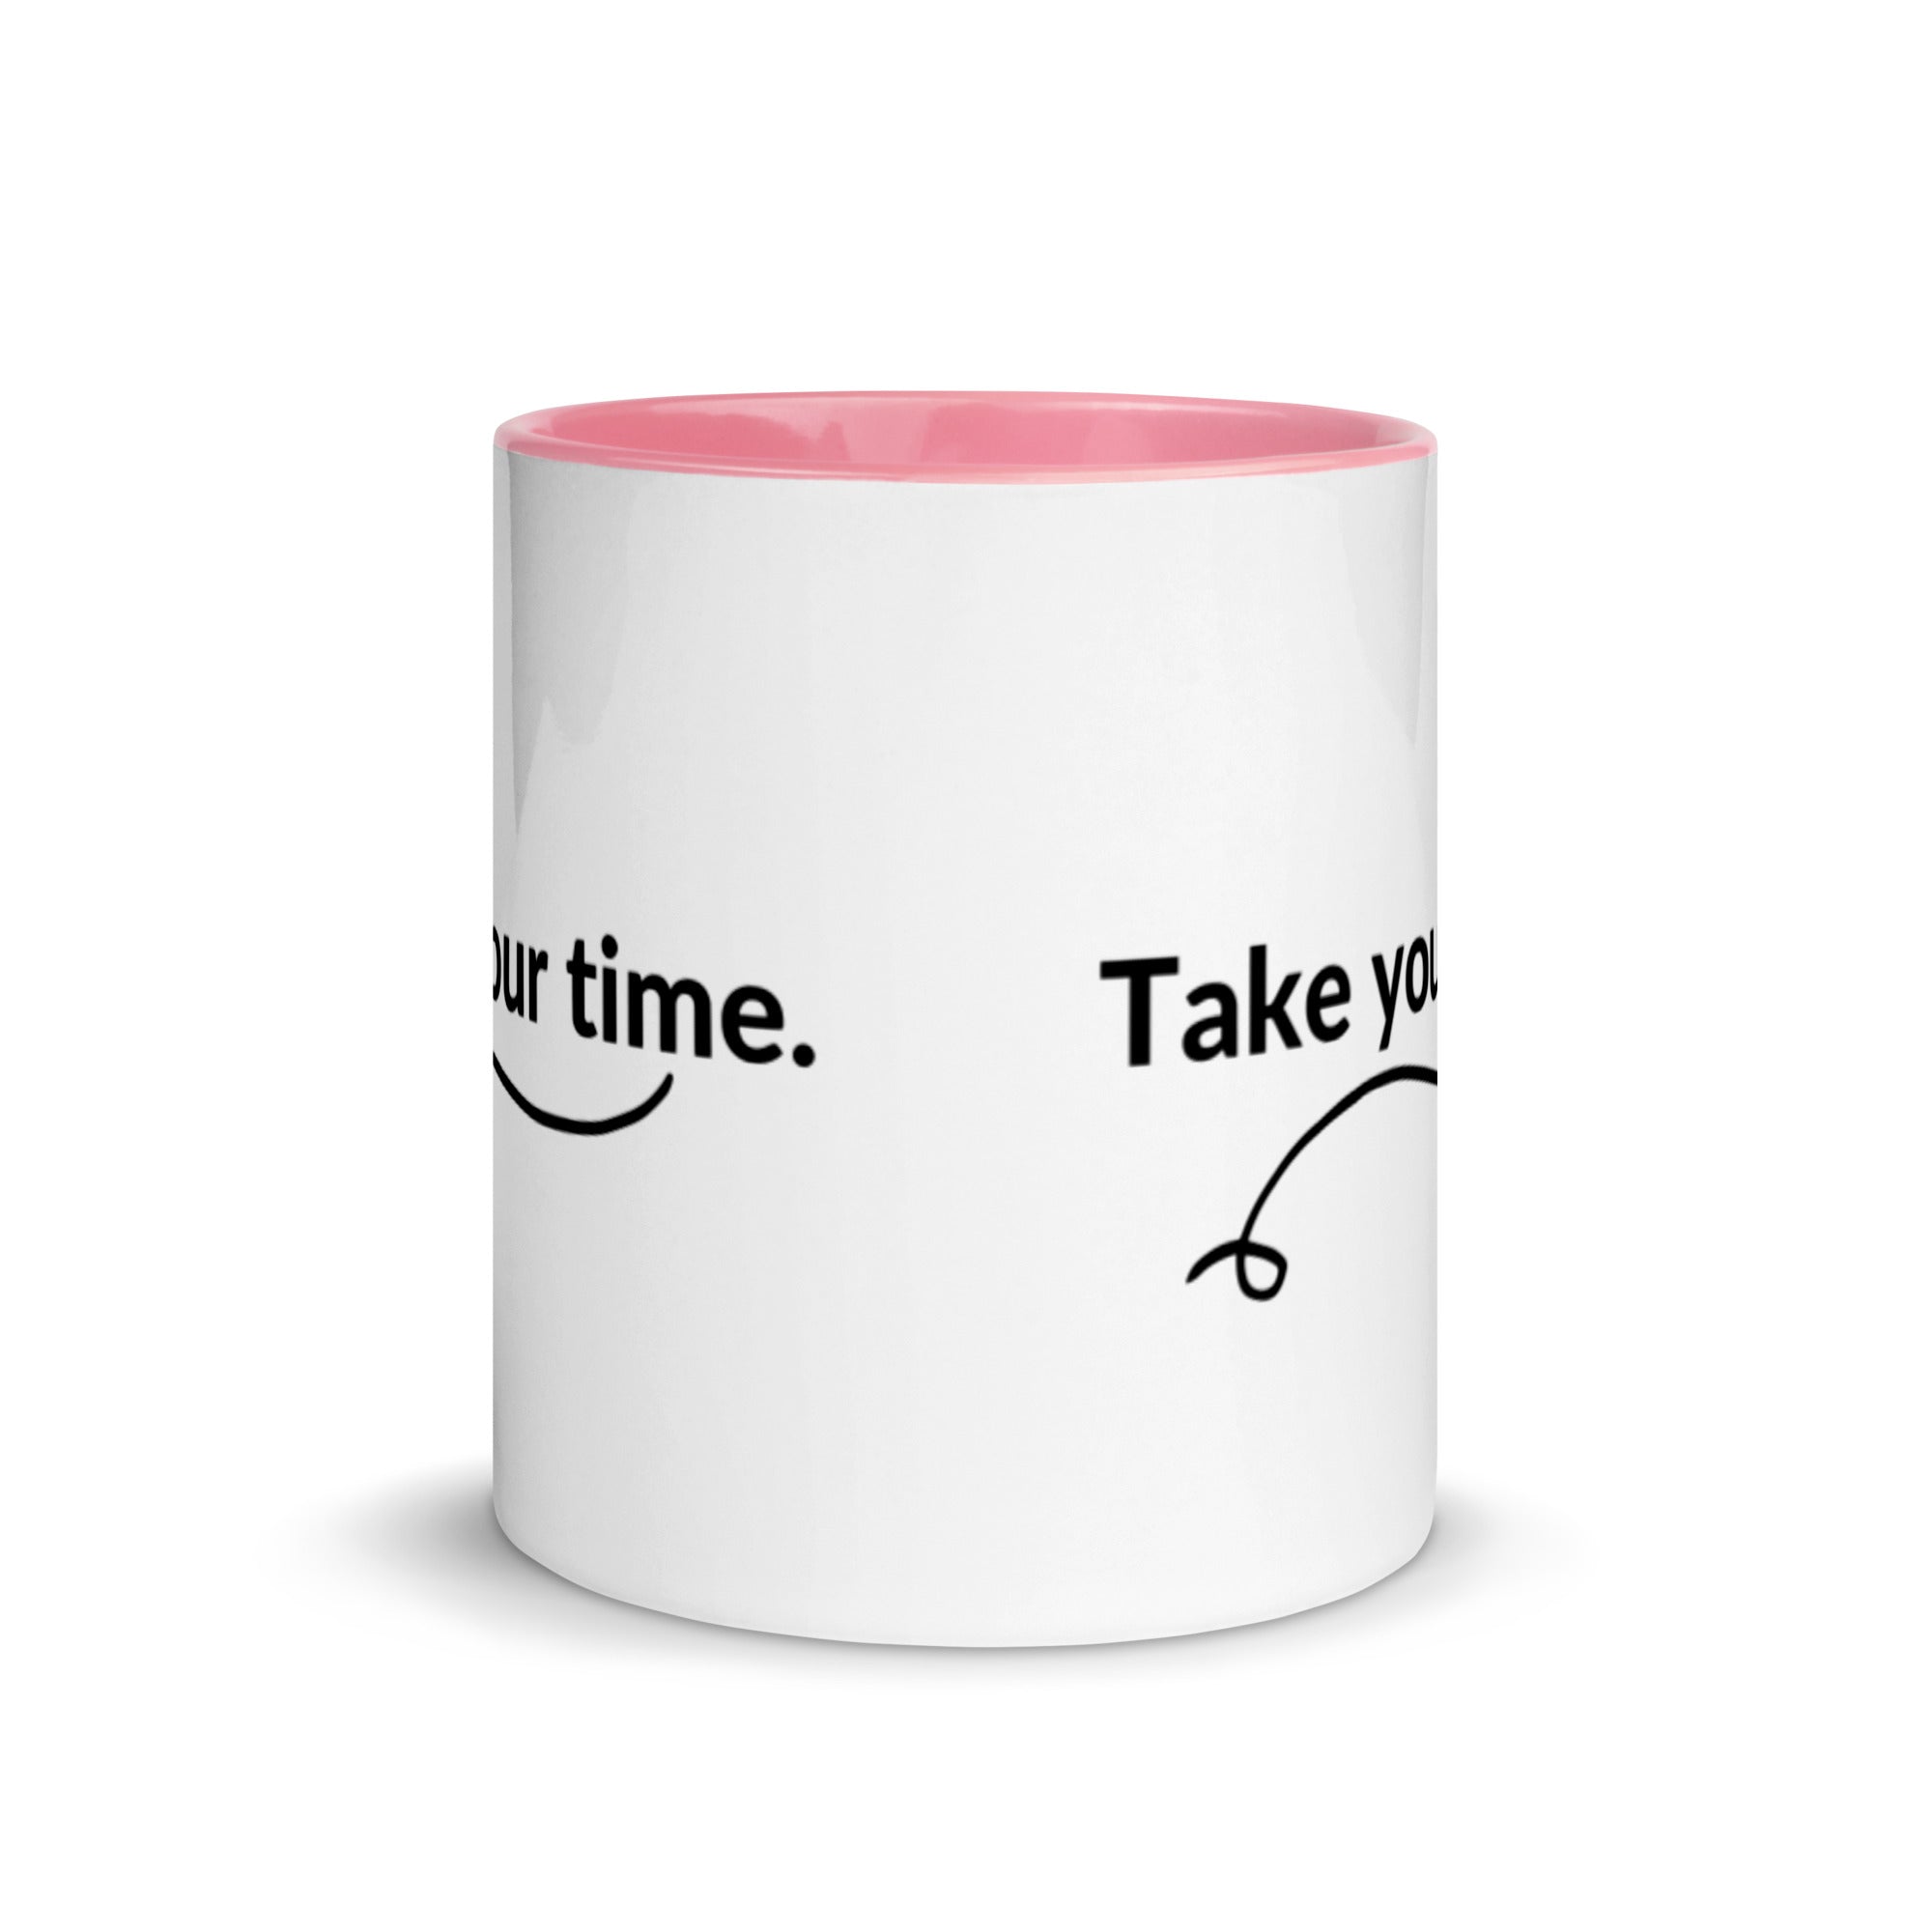 Take your Time - Mug with Color Inside